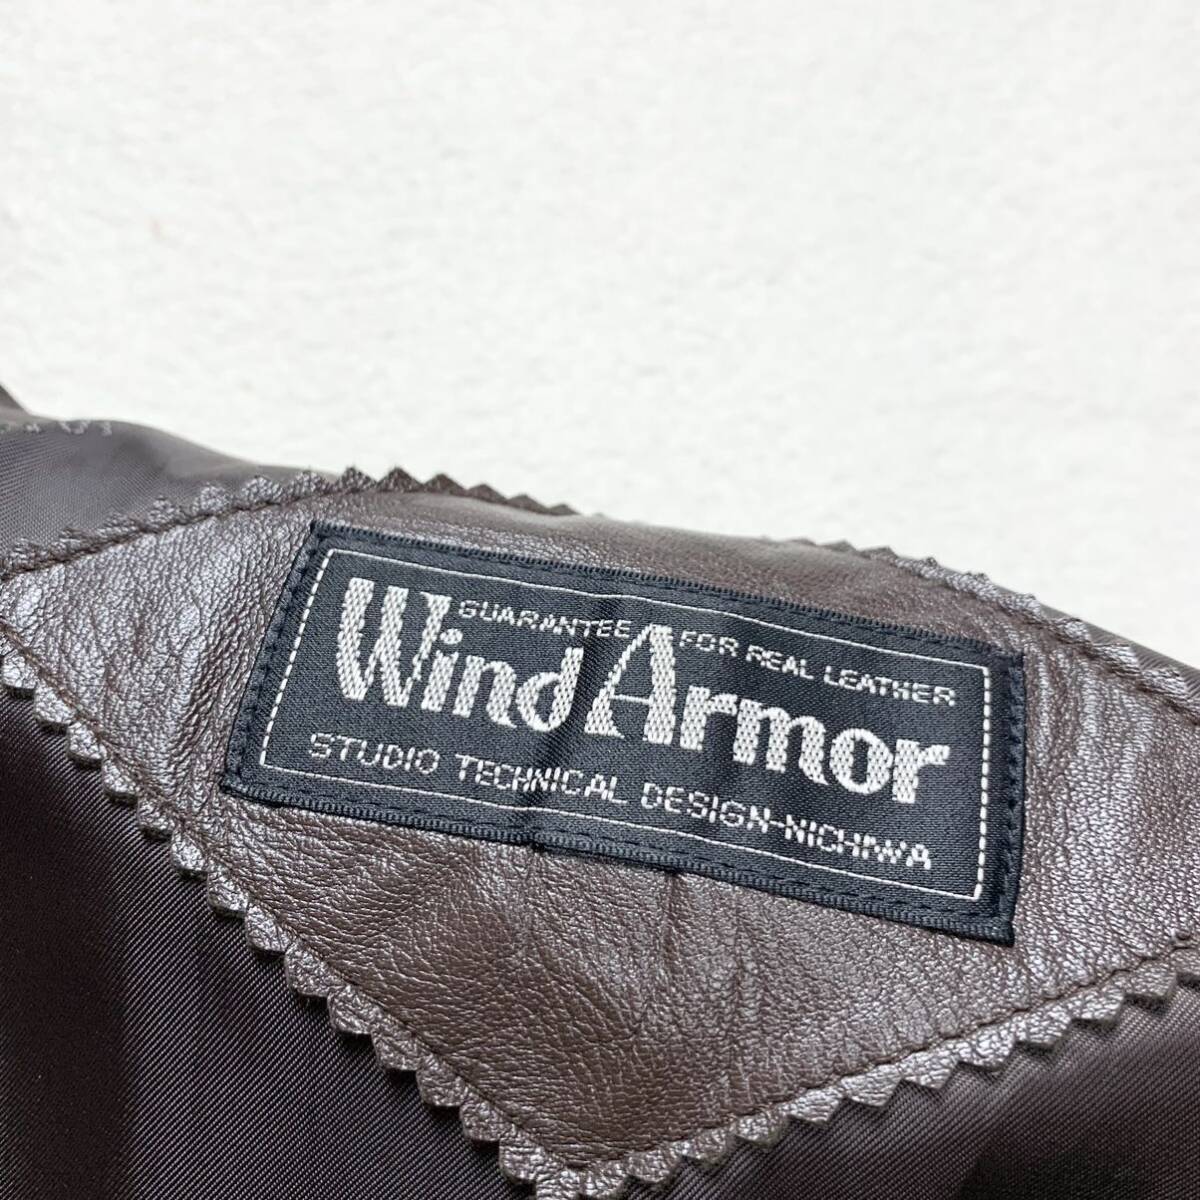  редкий L окно armor -[ первоклассный. овечья кожа ]WIND ARMOR Пальто Честерфилд подкладка общий рисунок длинный длина жакет овчина кожа ягненка Brown 1 иен 